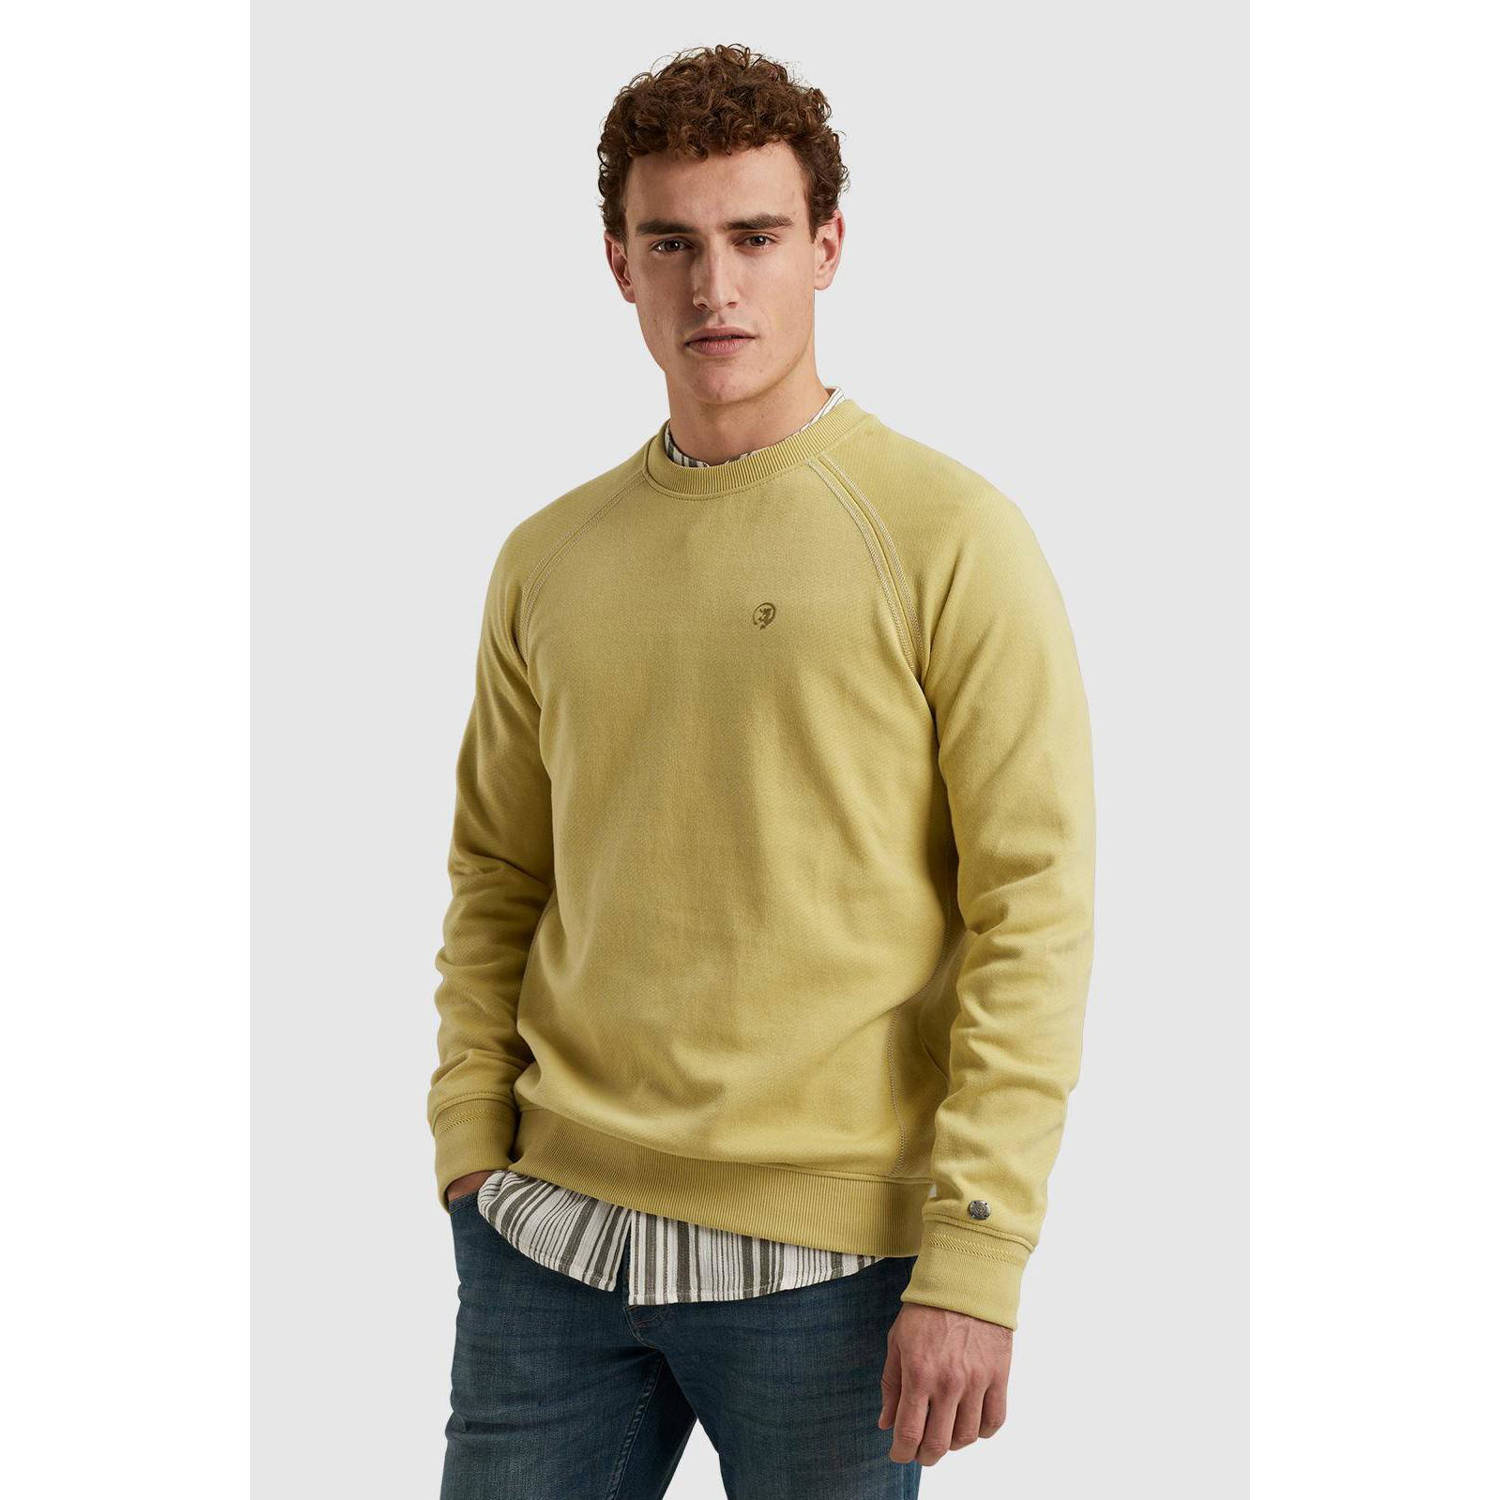 Cast Iron sweater met logo geel